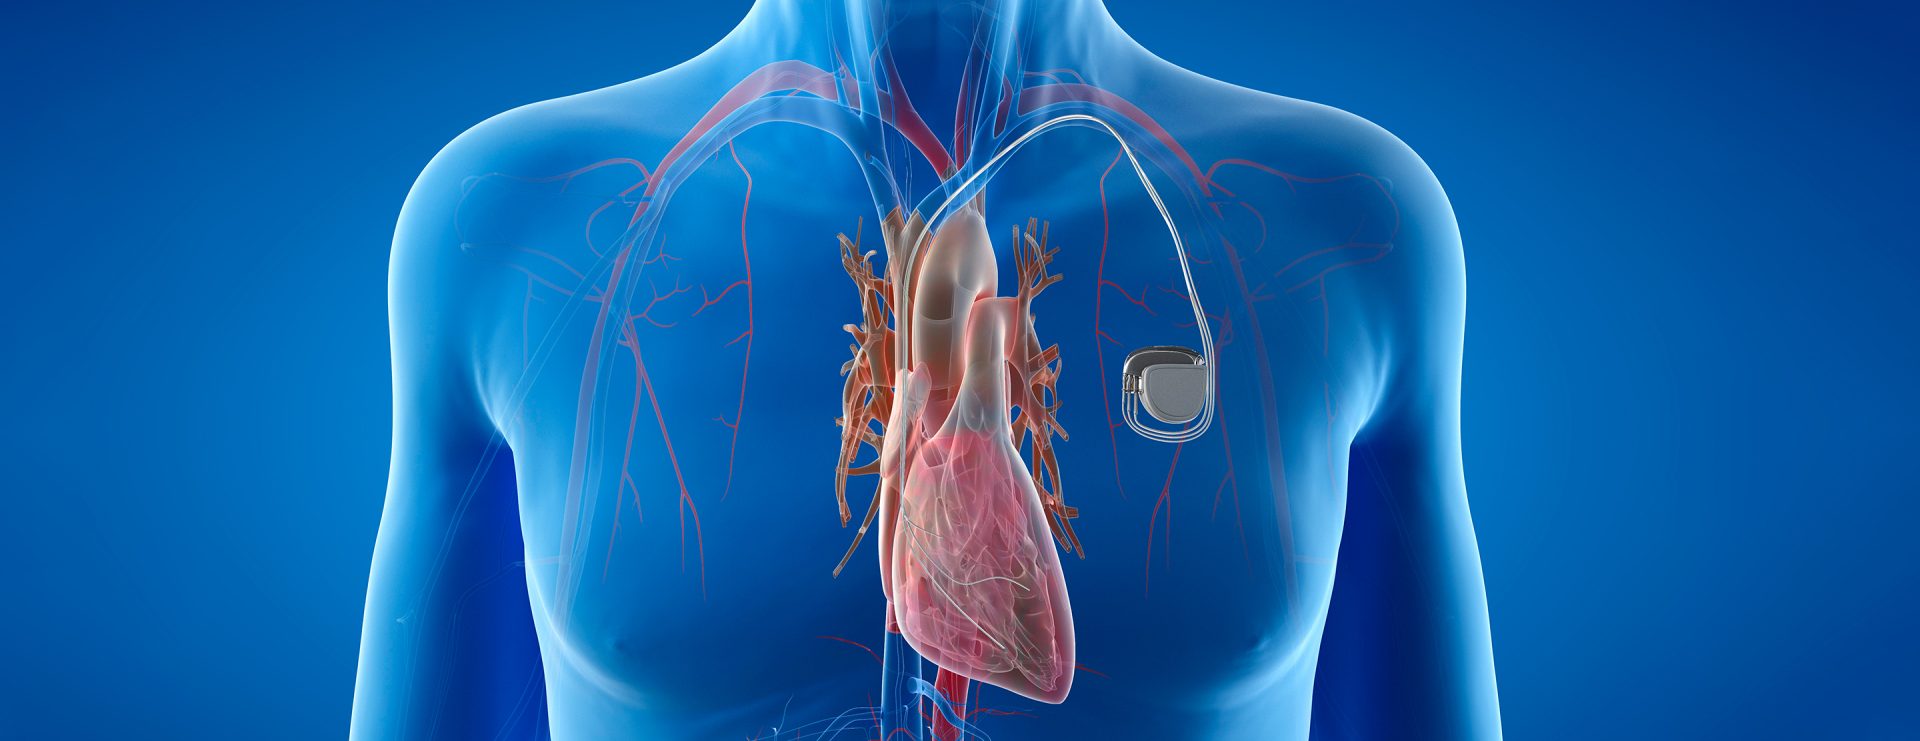 Stimulateur cardiaque - Garant de notre cœur